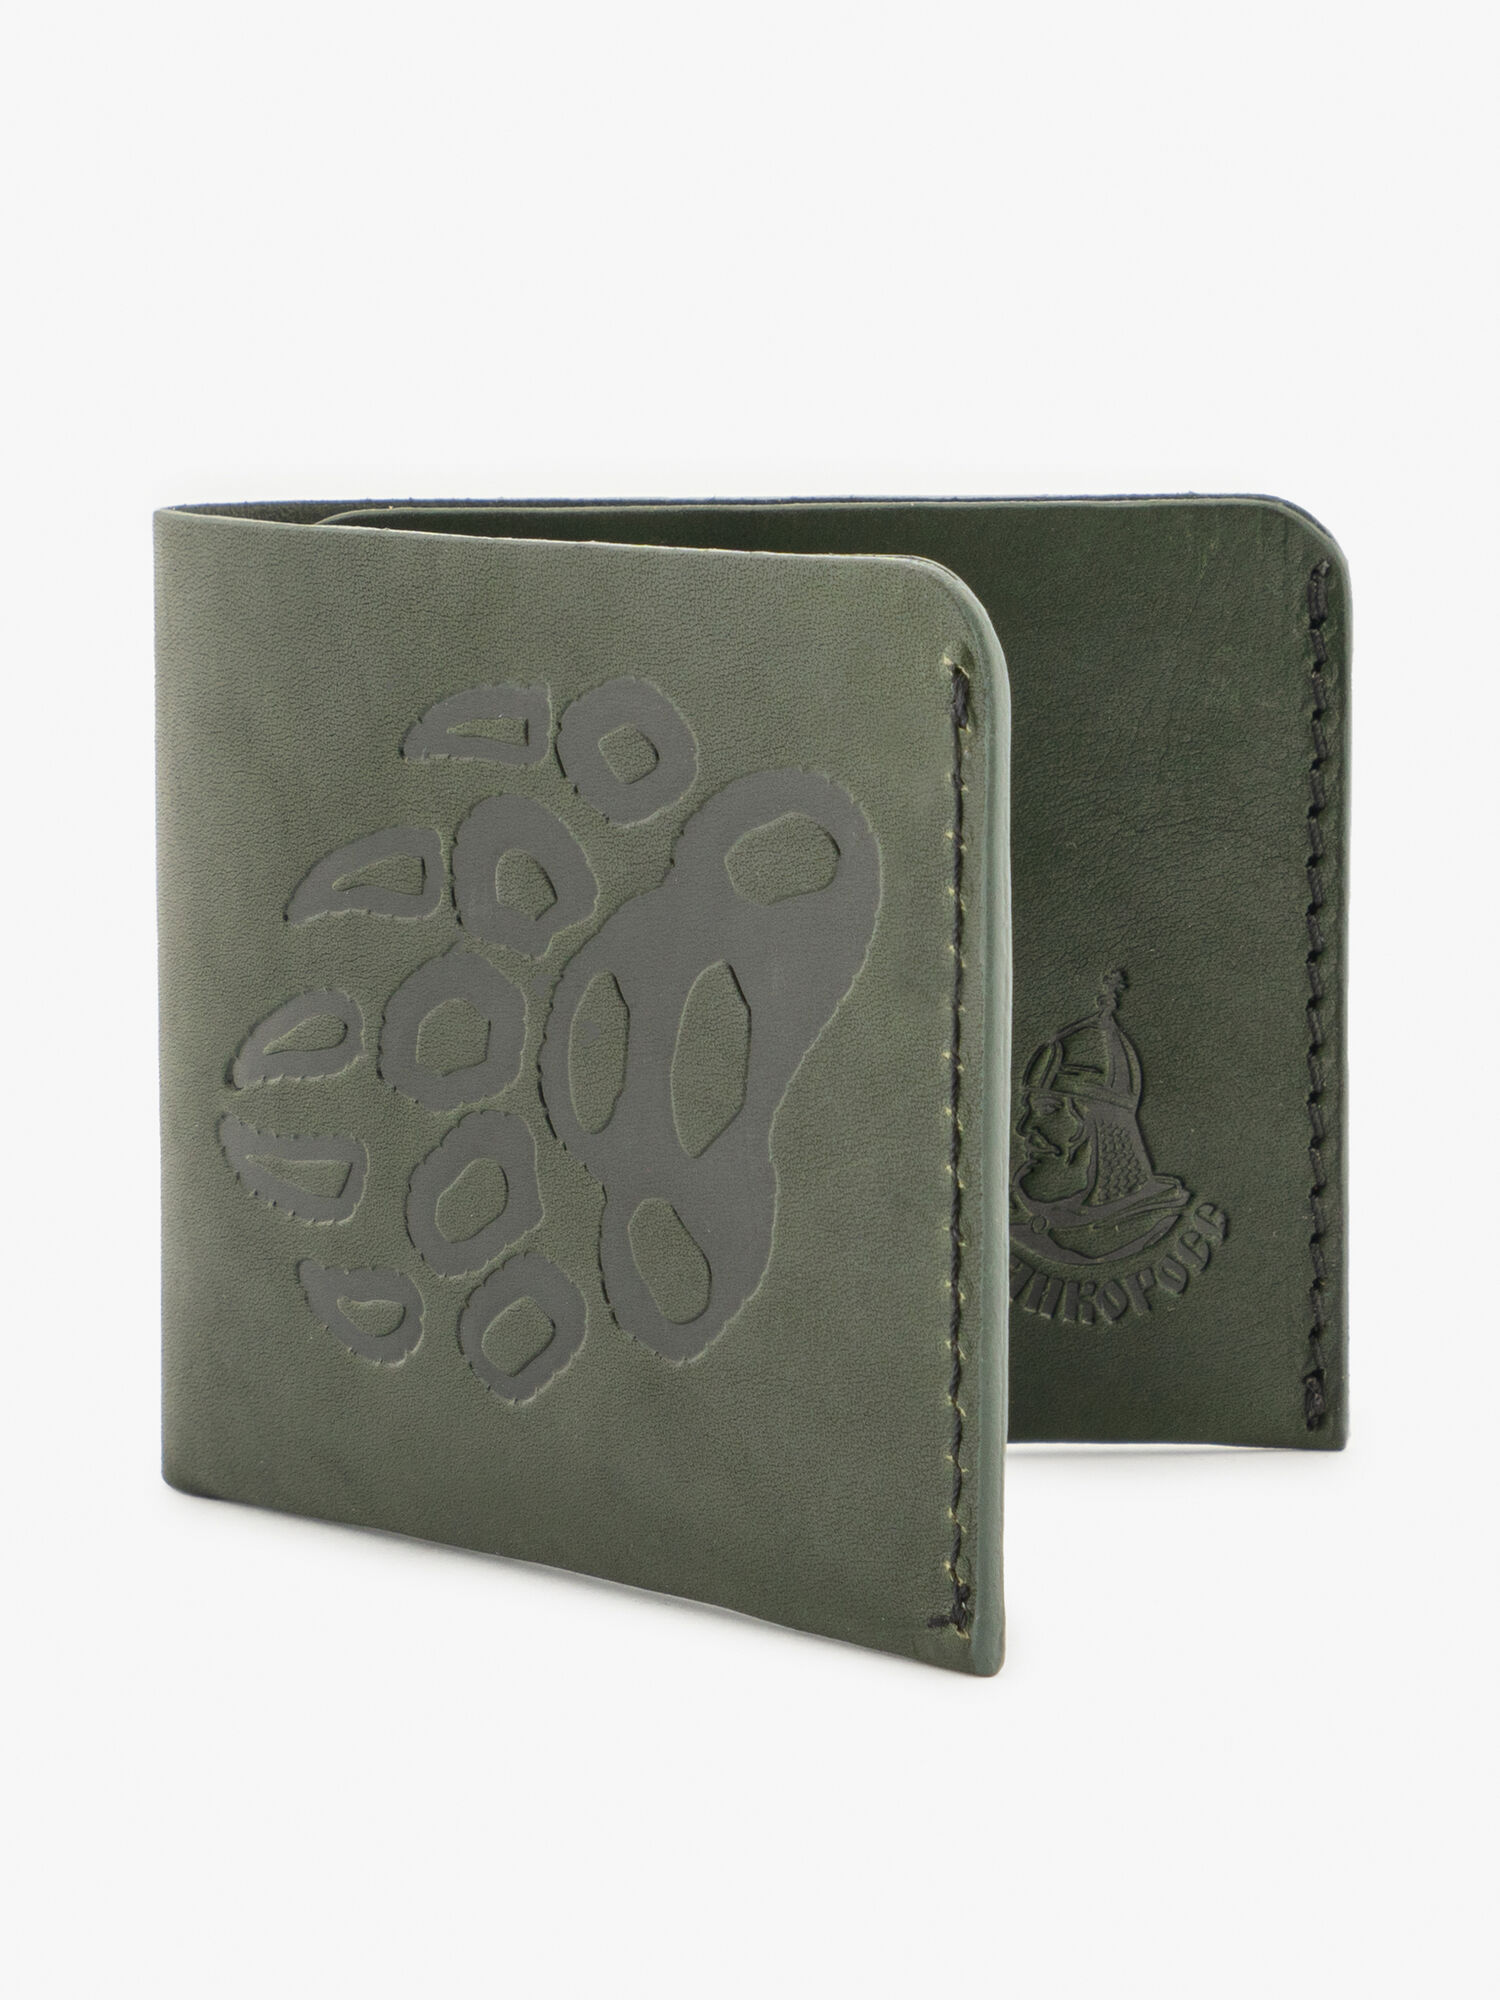 Бумажник-Компактный из натуральной кожи «Краст» тёмно-зелёного цвета